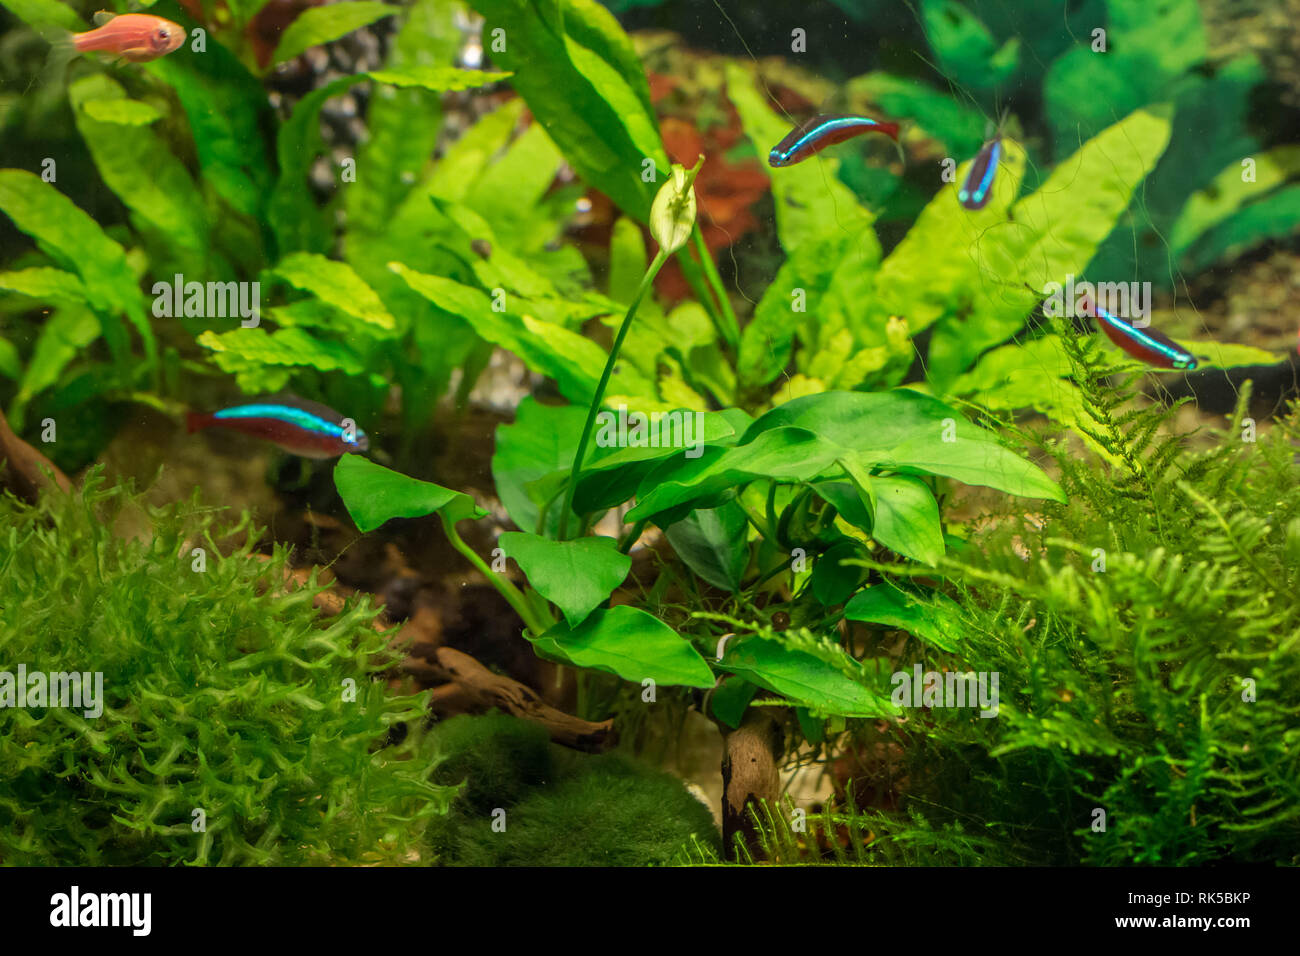 Flowering Anubias plant  in aquarium Stock Photo